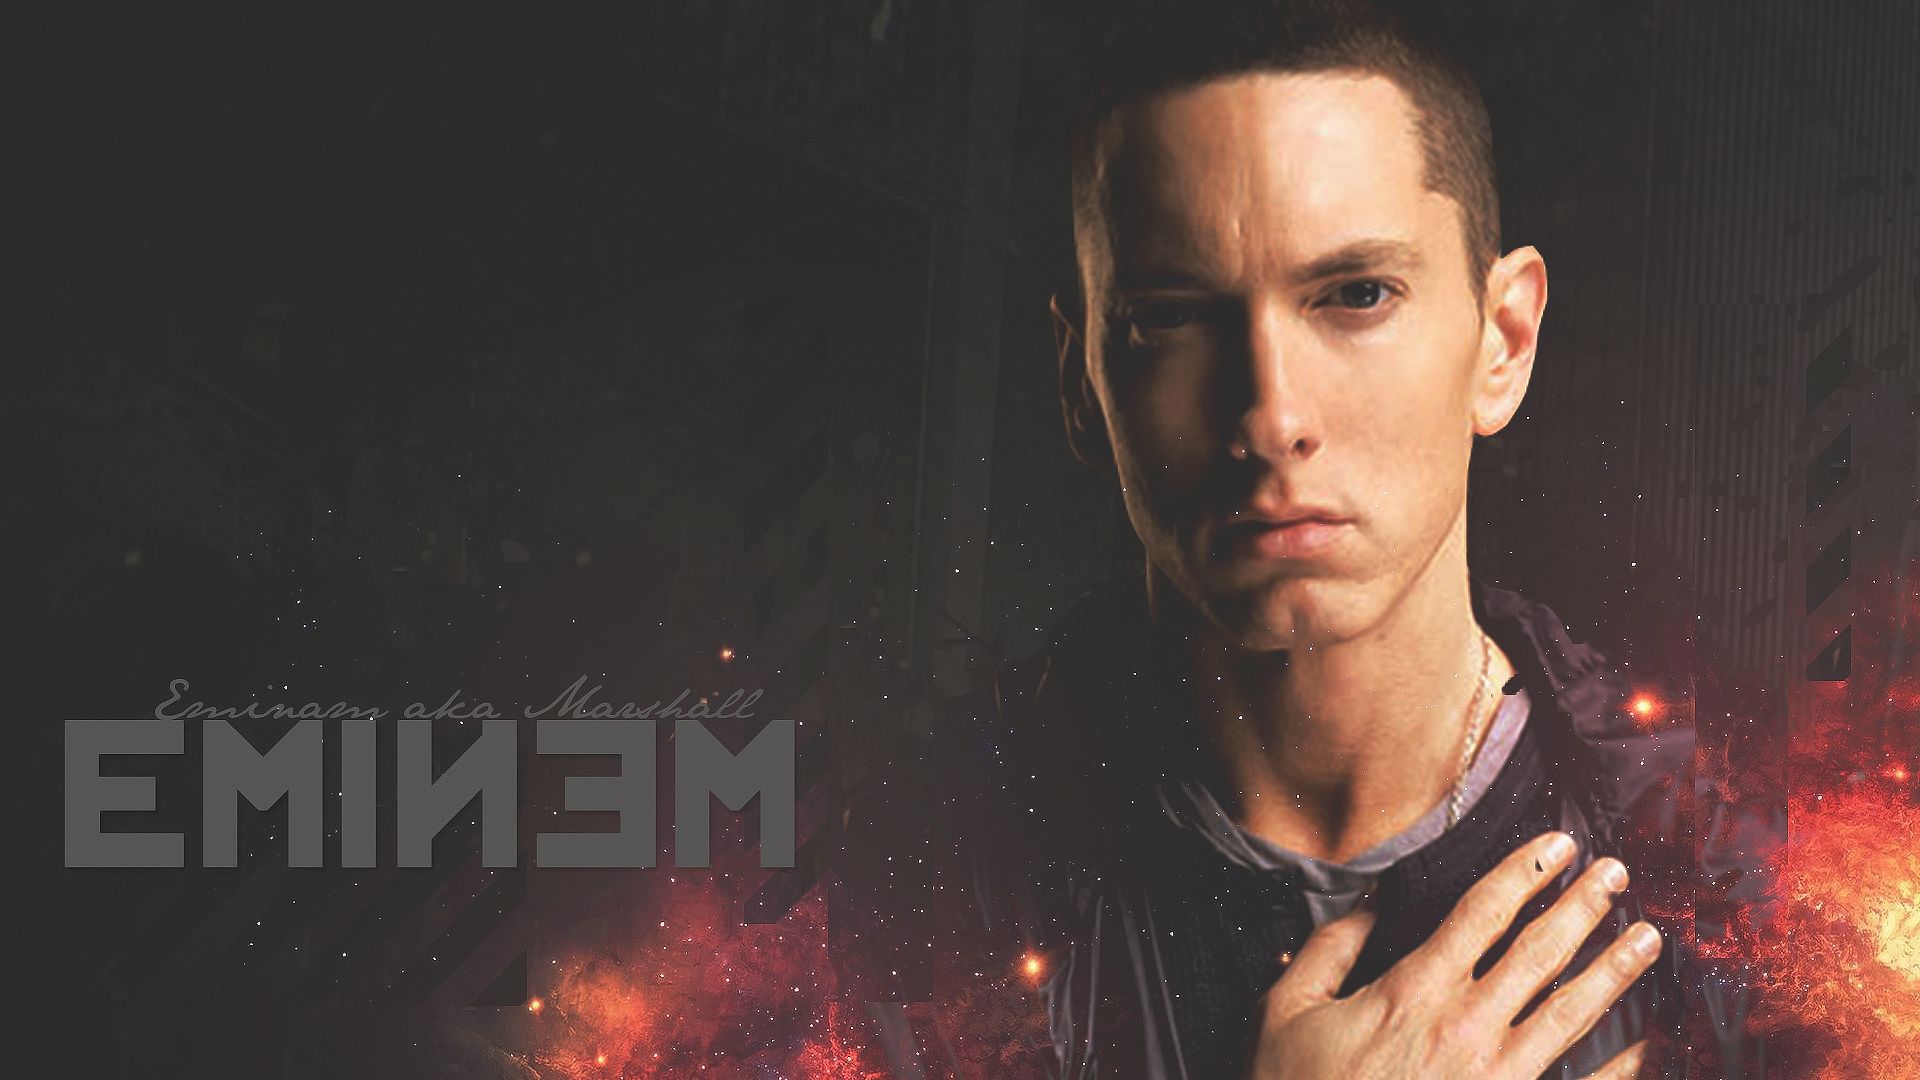 Eminem  desktop Images